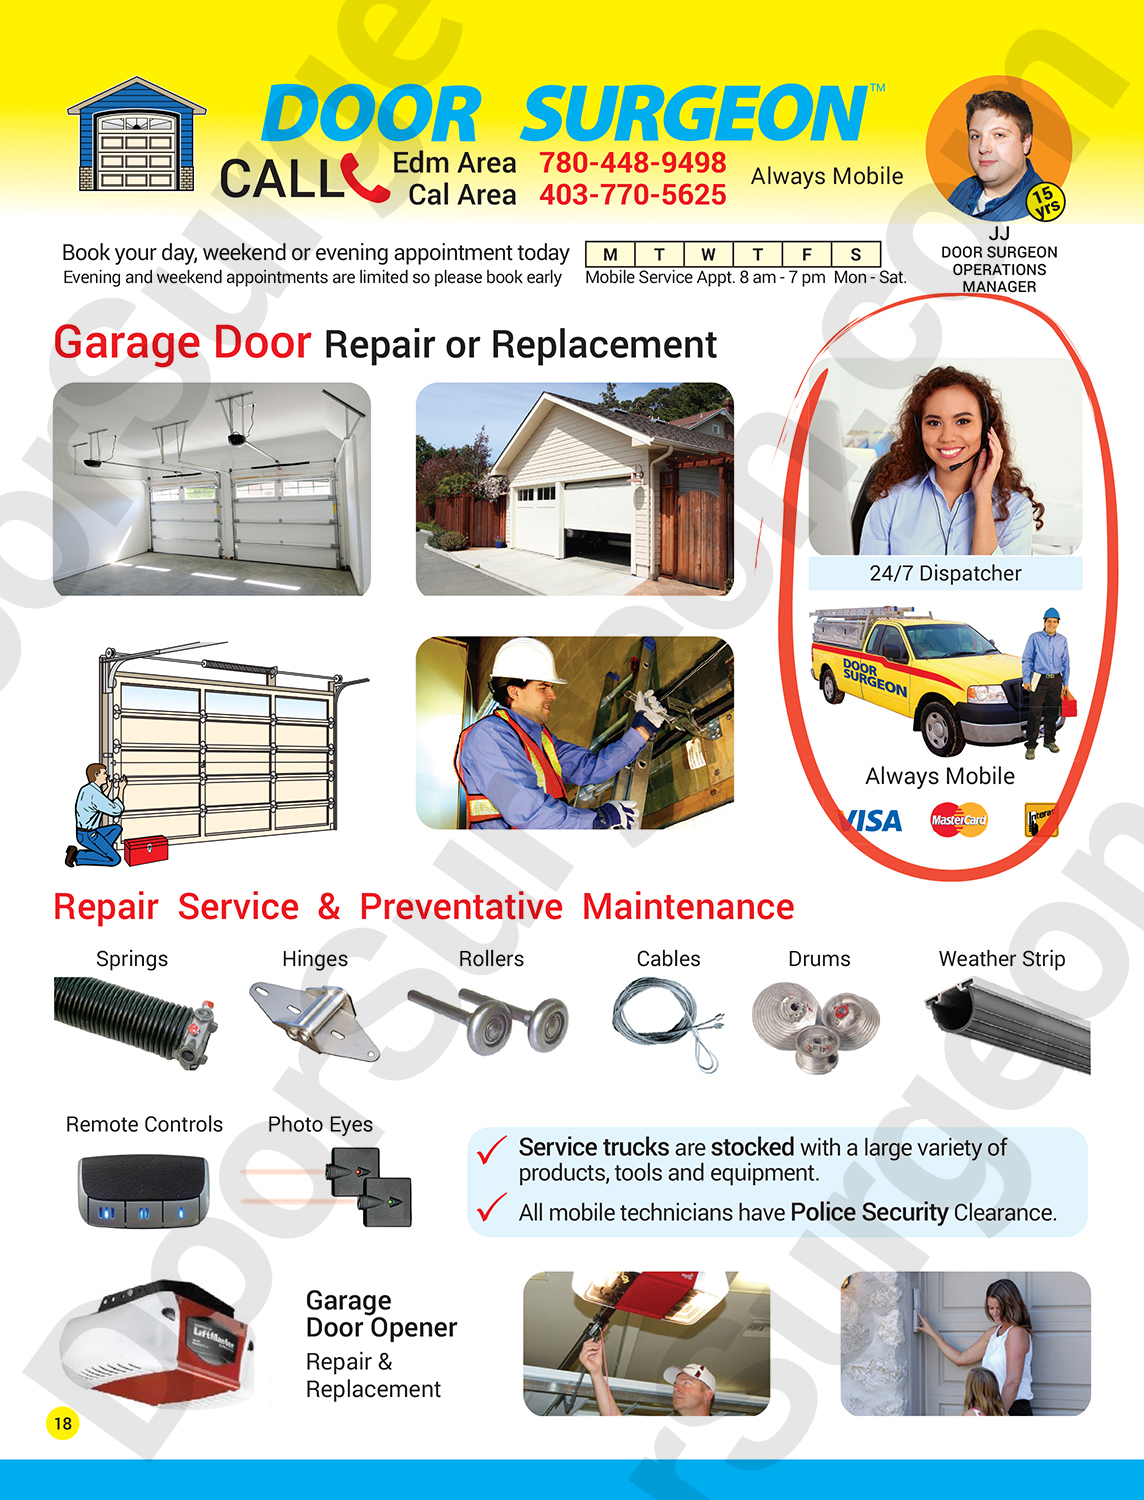 Door Surgeon garage door replacement services professional expert garage door repair technicians Cochrane.